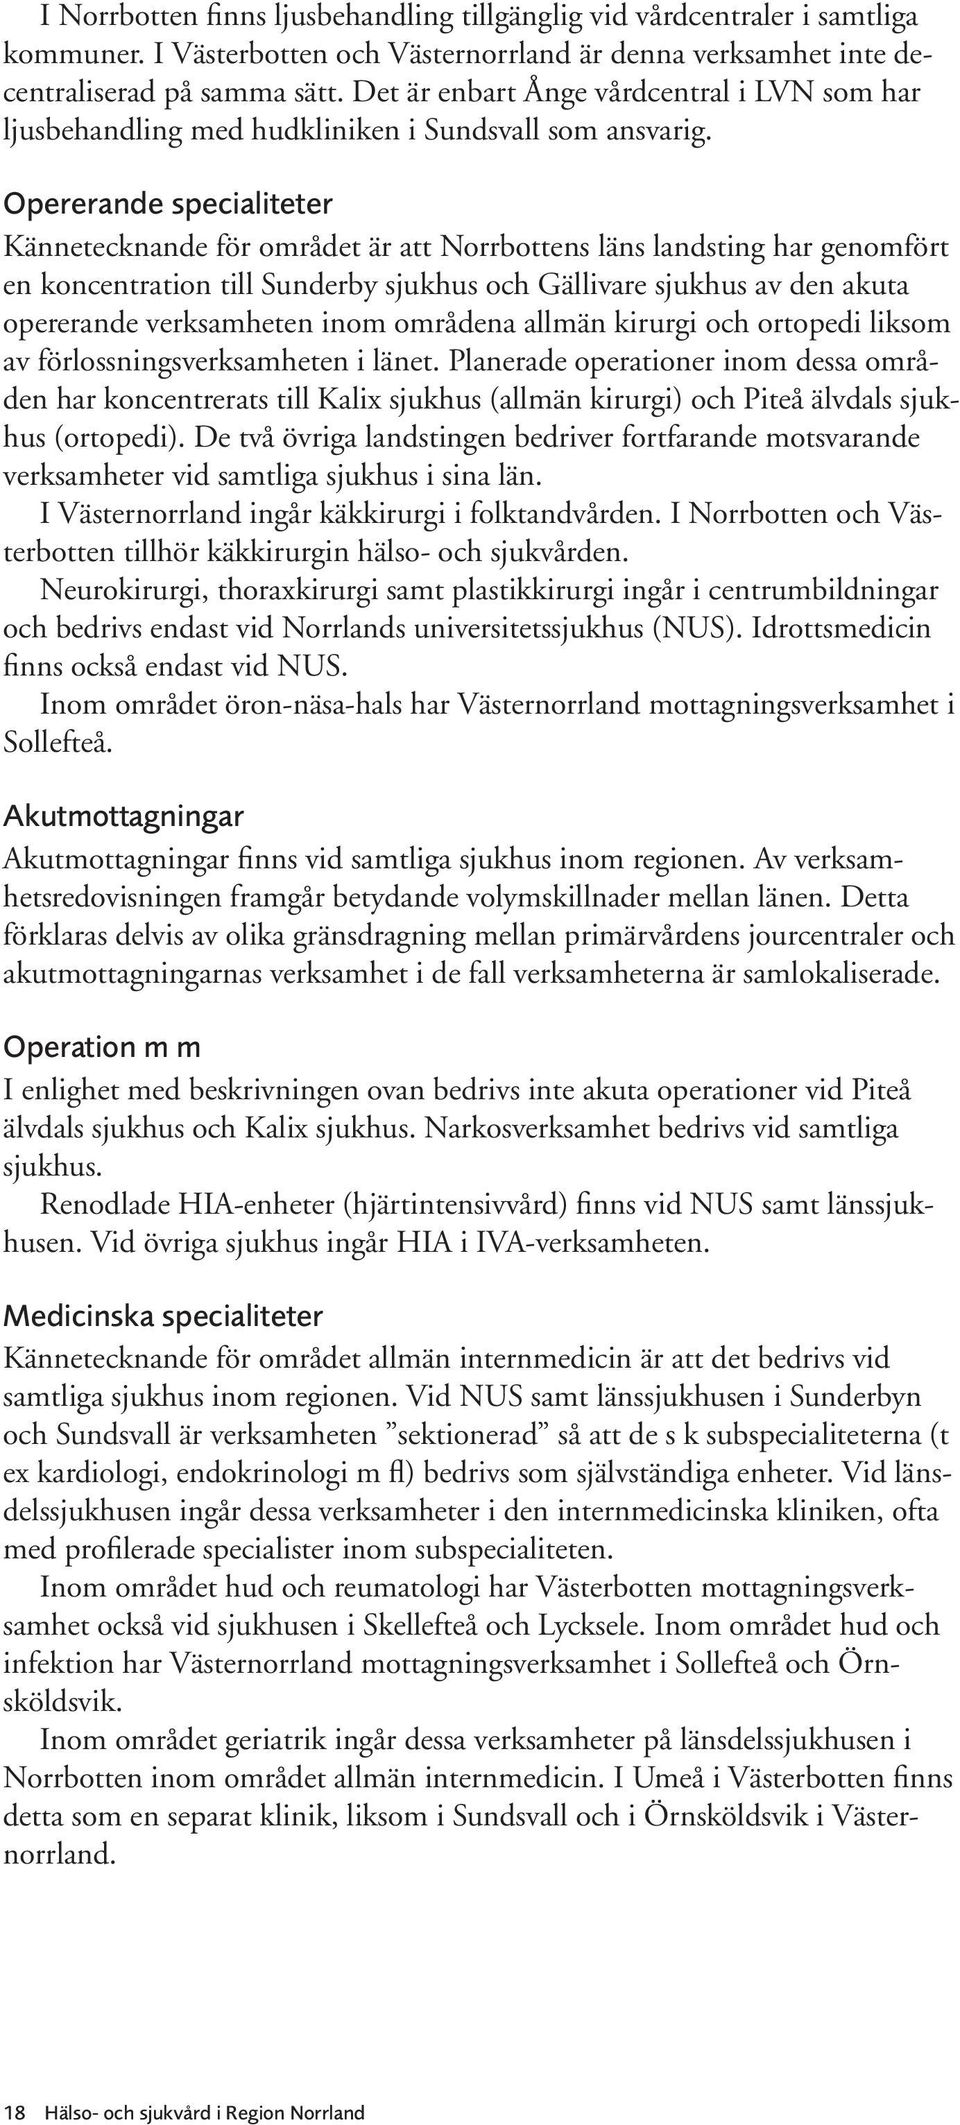 Opererande specialiteter Kännetecknande för området är att Norrbottens läns landsting har genomfört en koncentration till Sunderby sjukhus och Gällivare sjukhus av den akuta opererande verksamheten